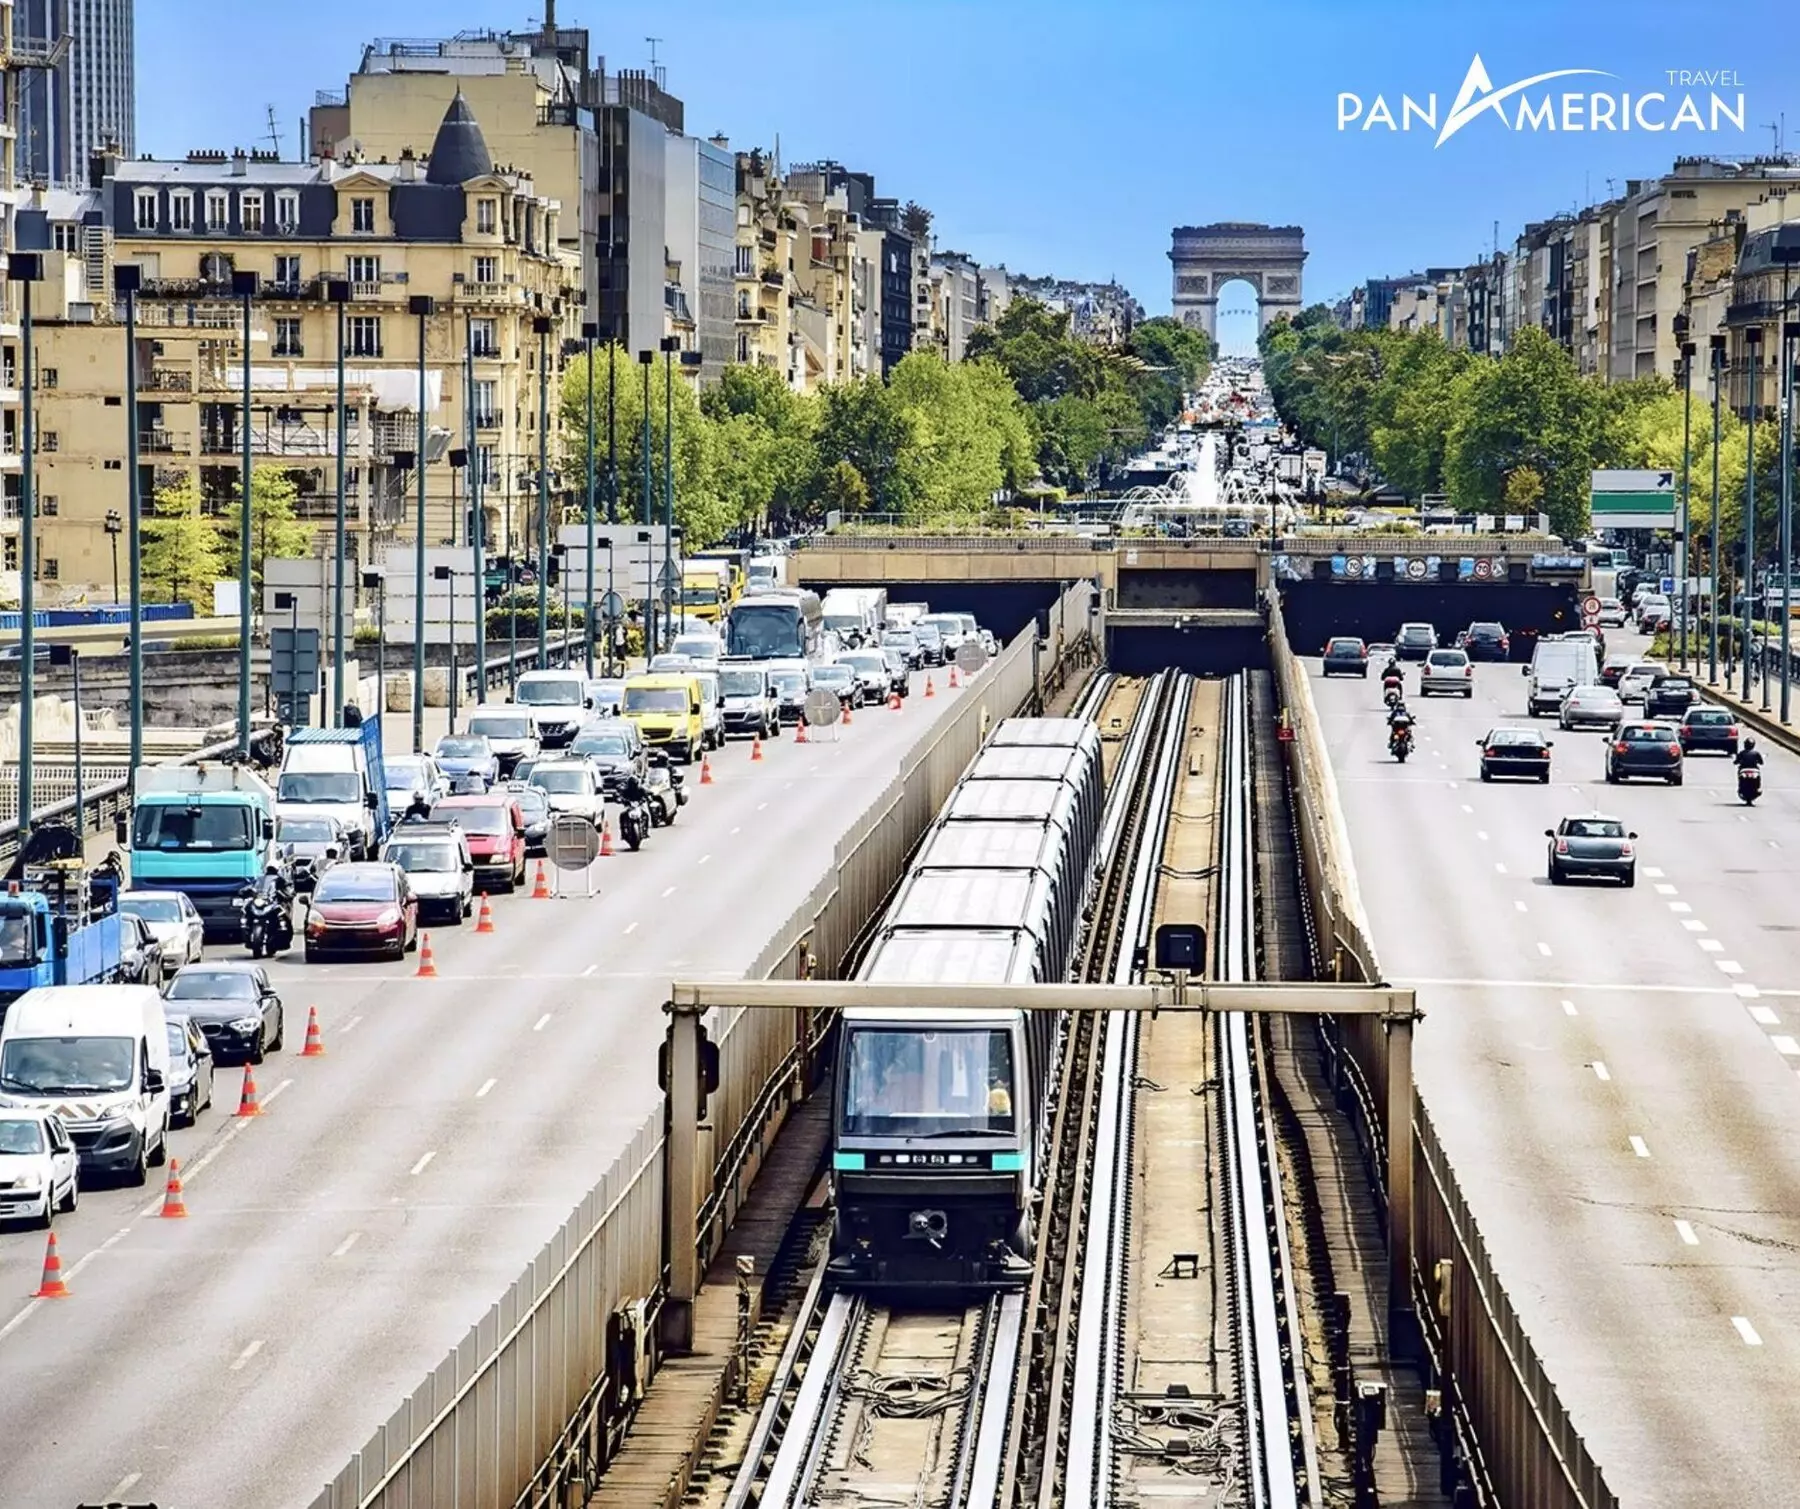 Di chuyển bằng các tuyến tàu metro là cách được nhiều người dân Pháp lựa chọn